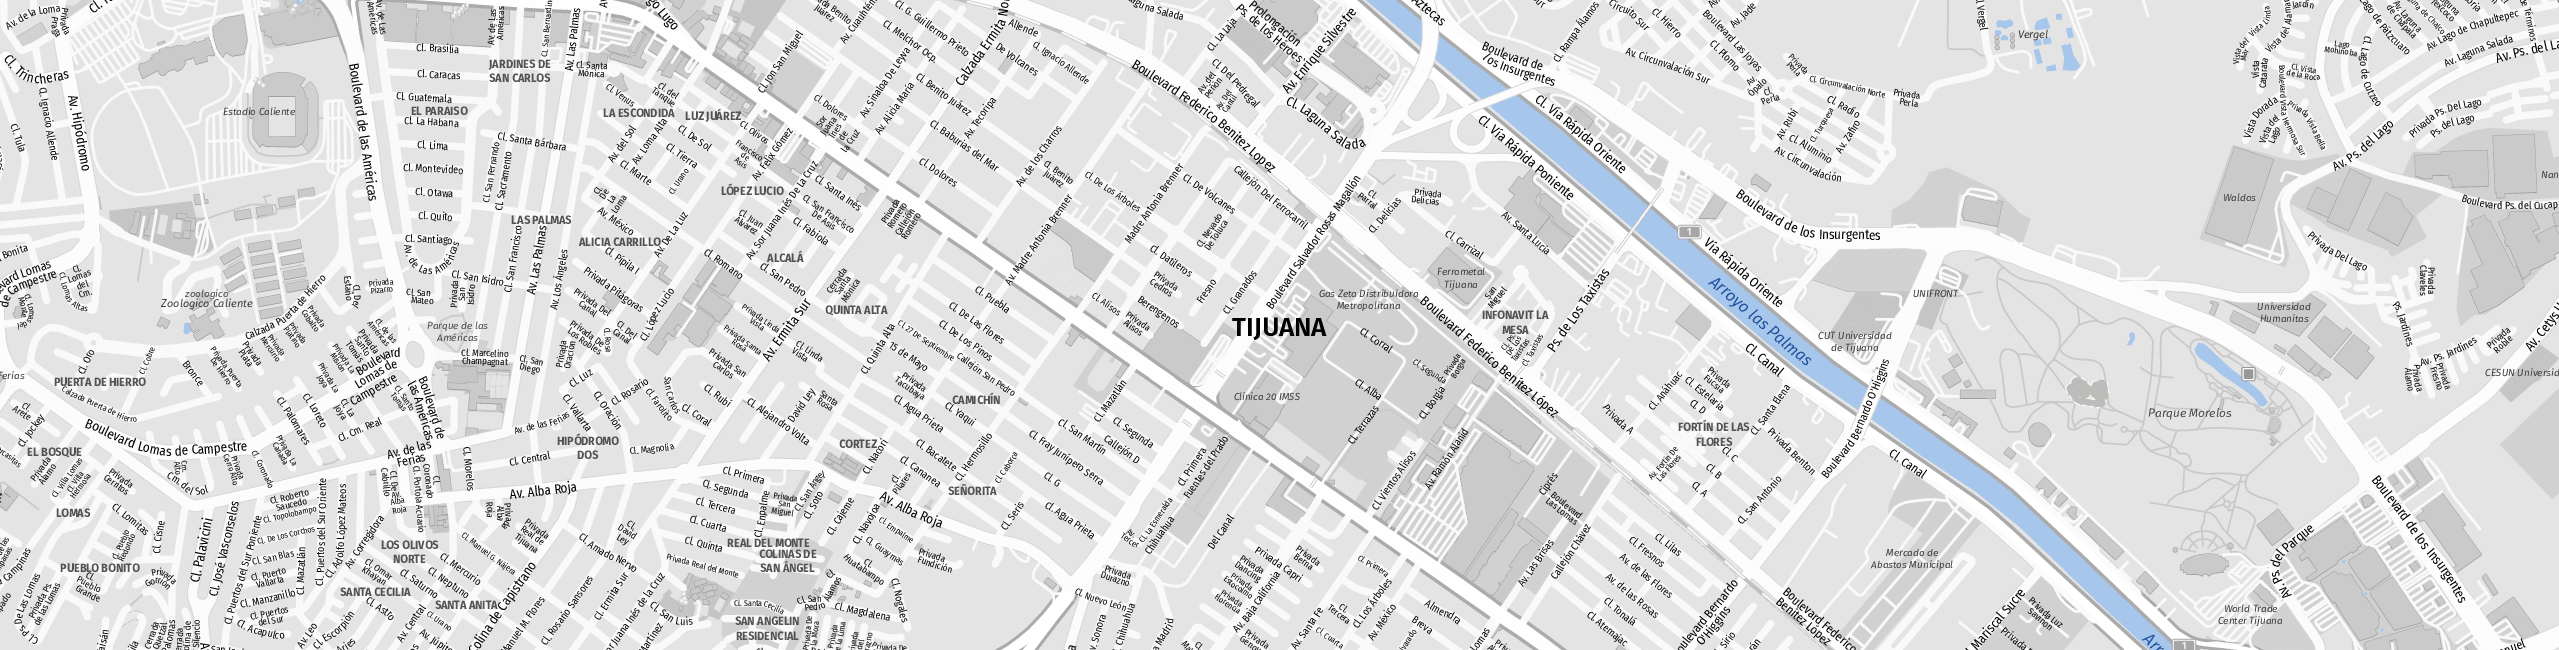 Stadtplan Tijuana zum Downloaden.